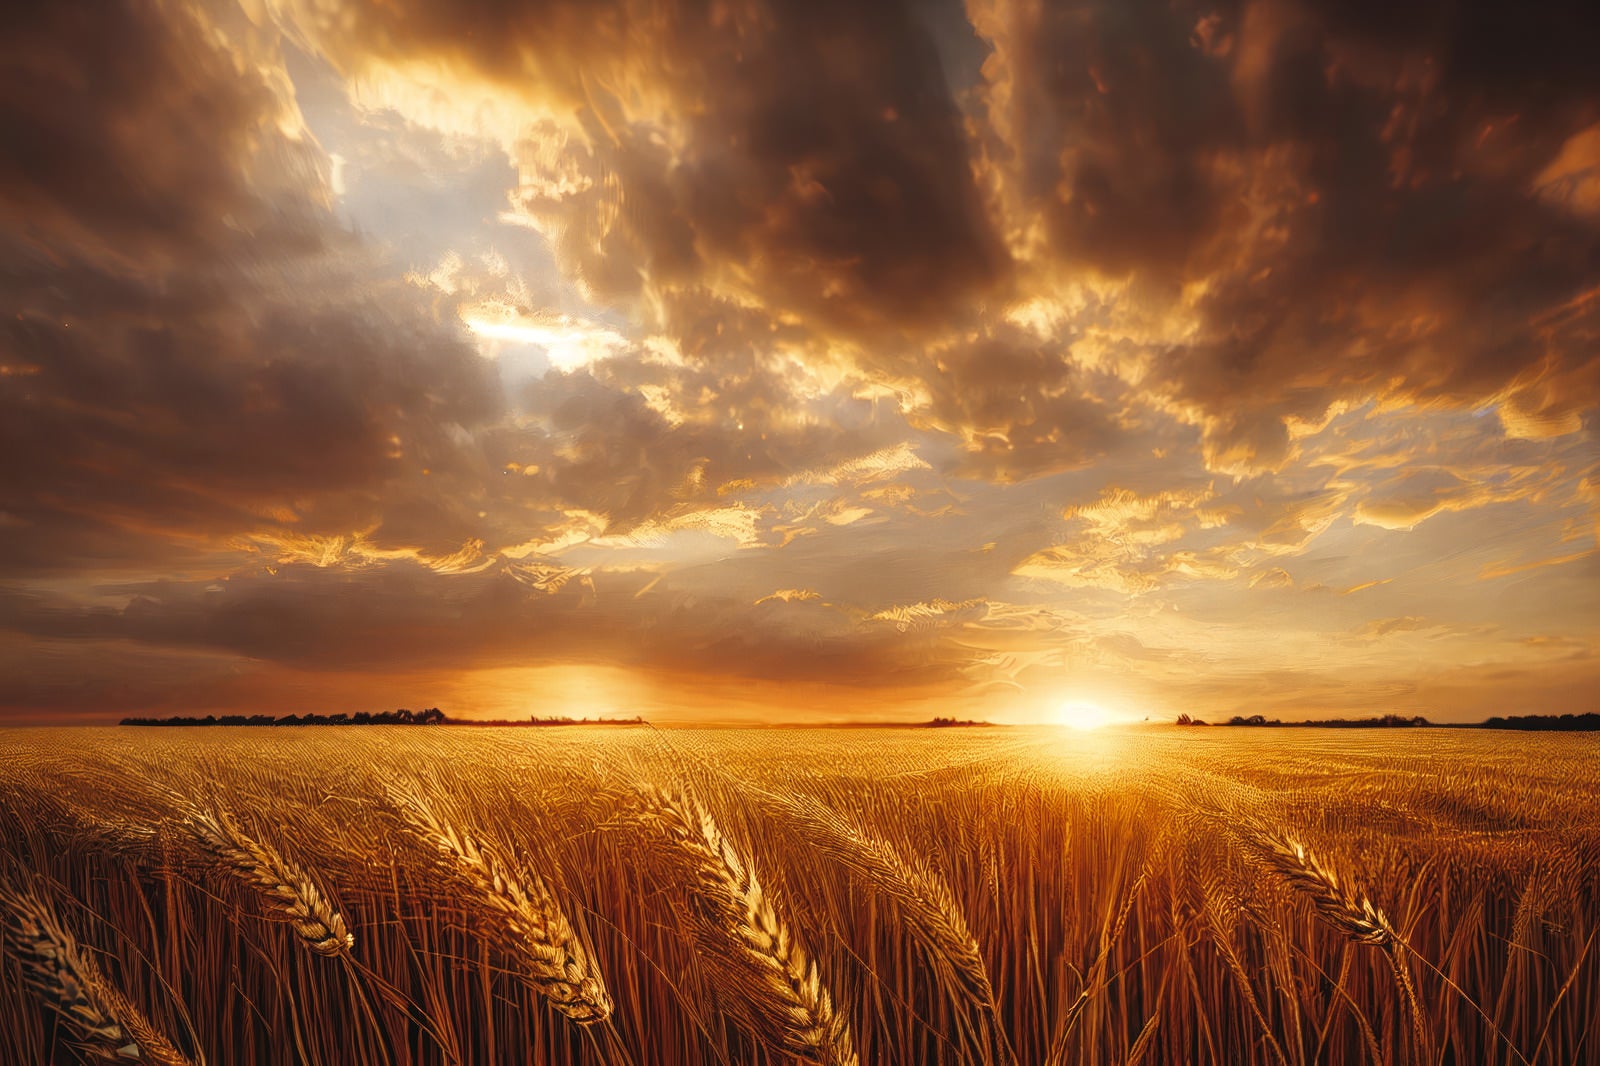 「沈みゆく夕日と小麦畑」の写真